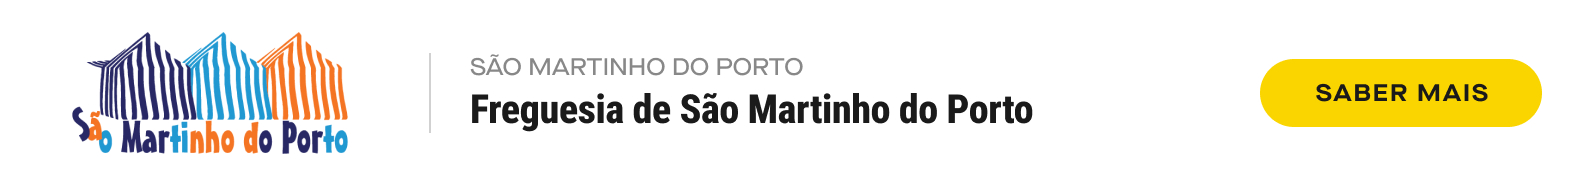 34.Desktop Freguesia De Sao Martinho Do Porto Sao Martinho Do Porto